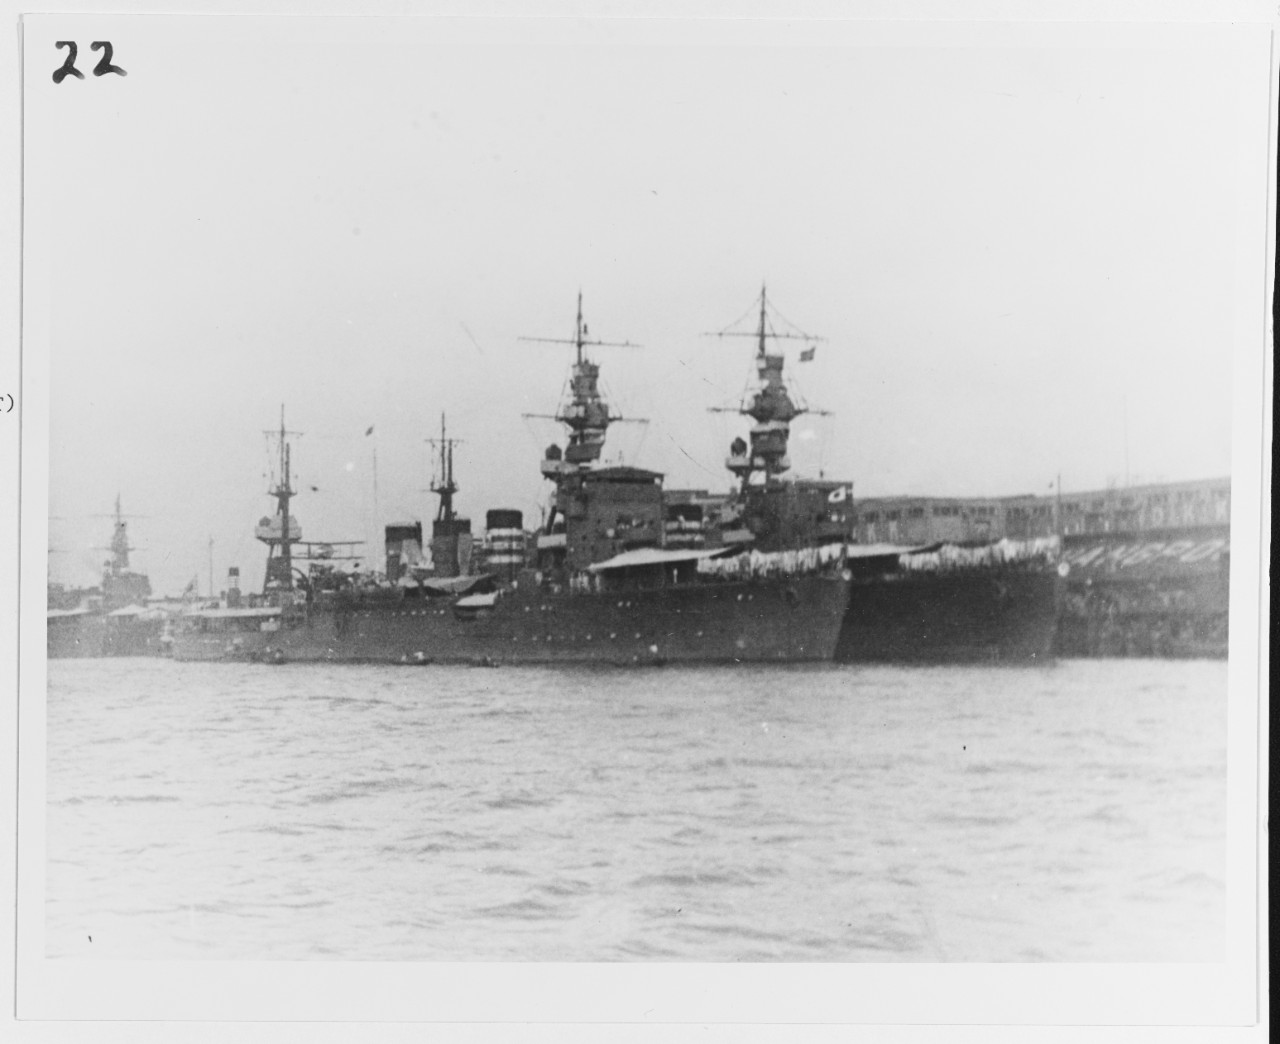 NATORI (Japanese cruiser, 1922)